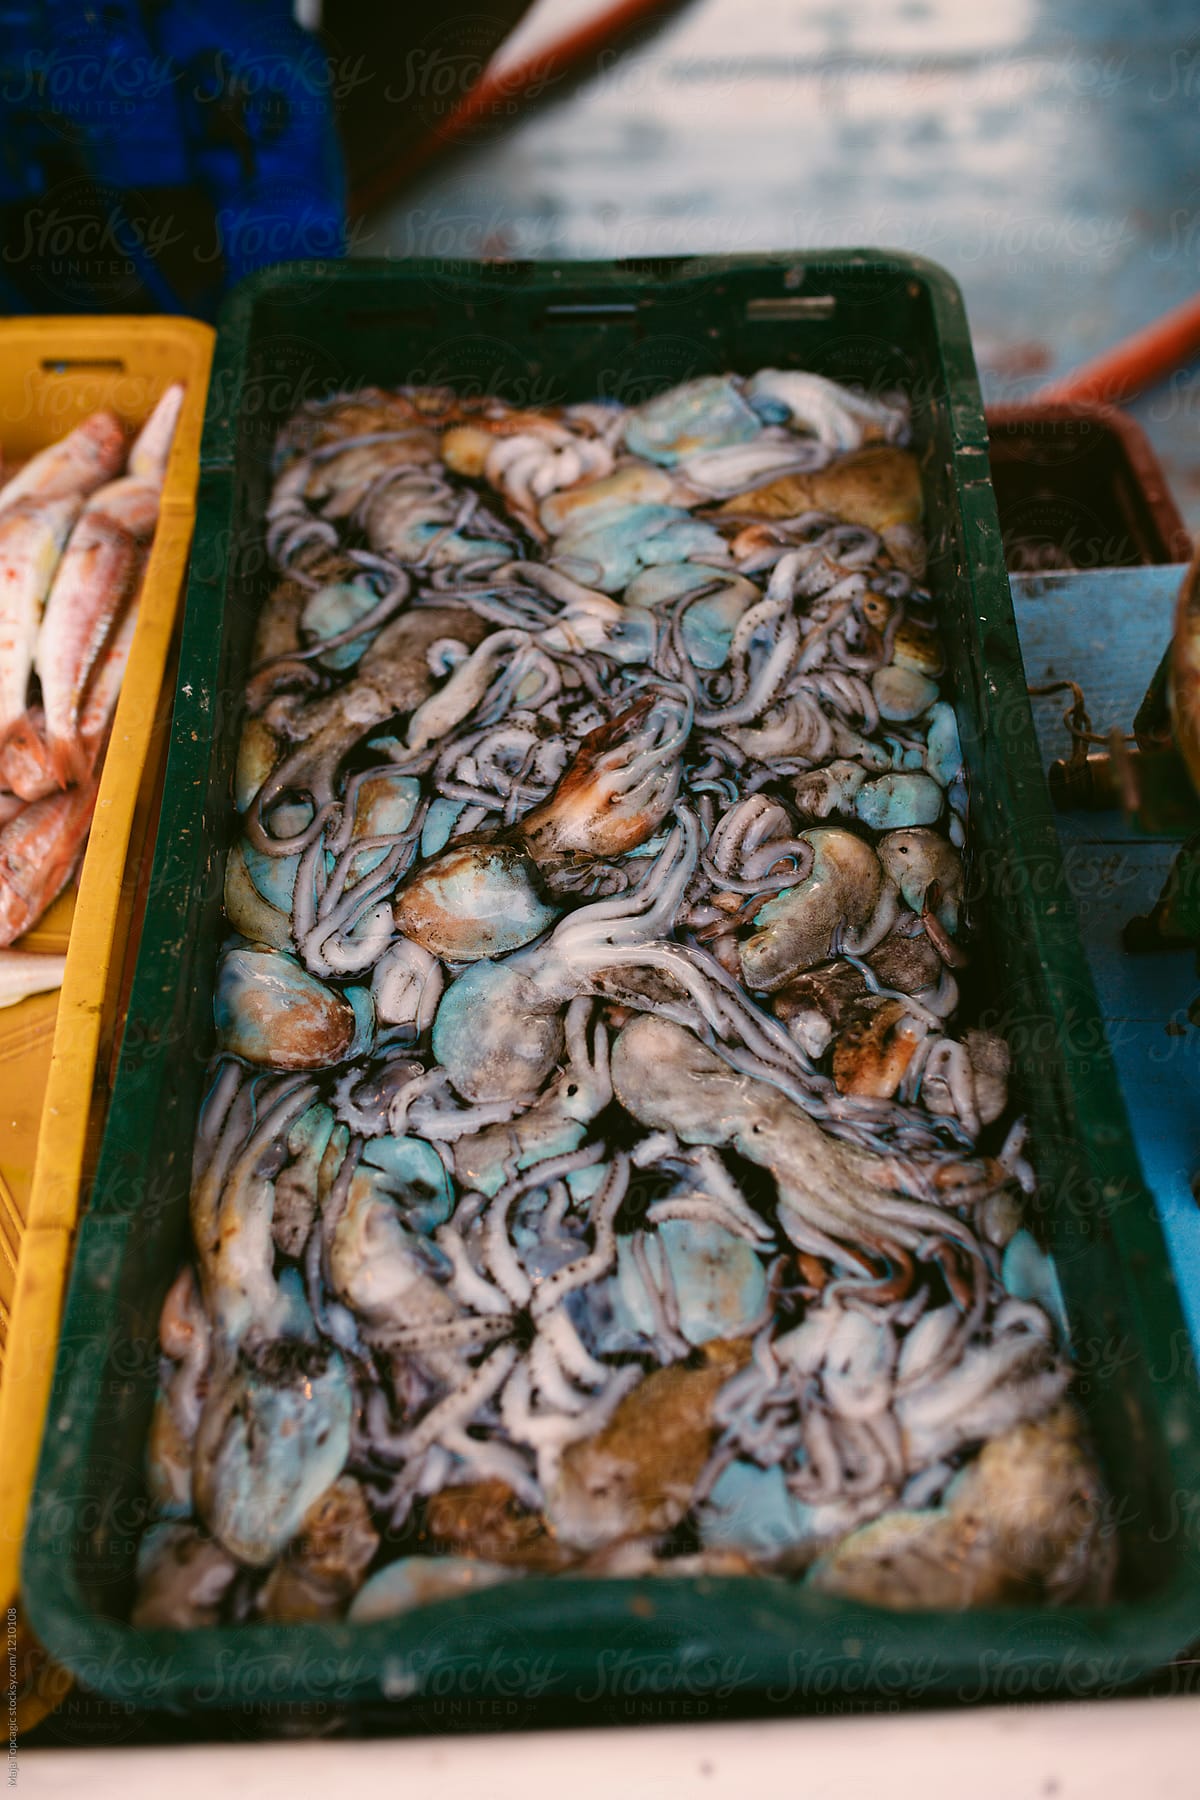 Sea food market